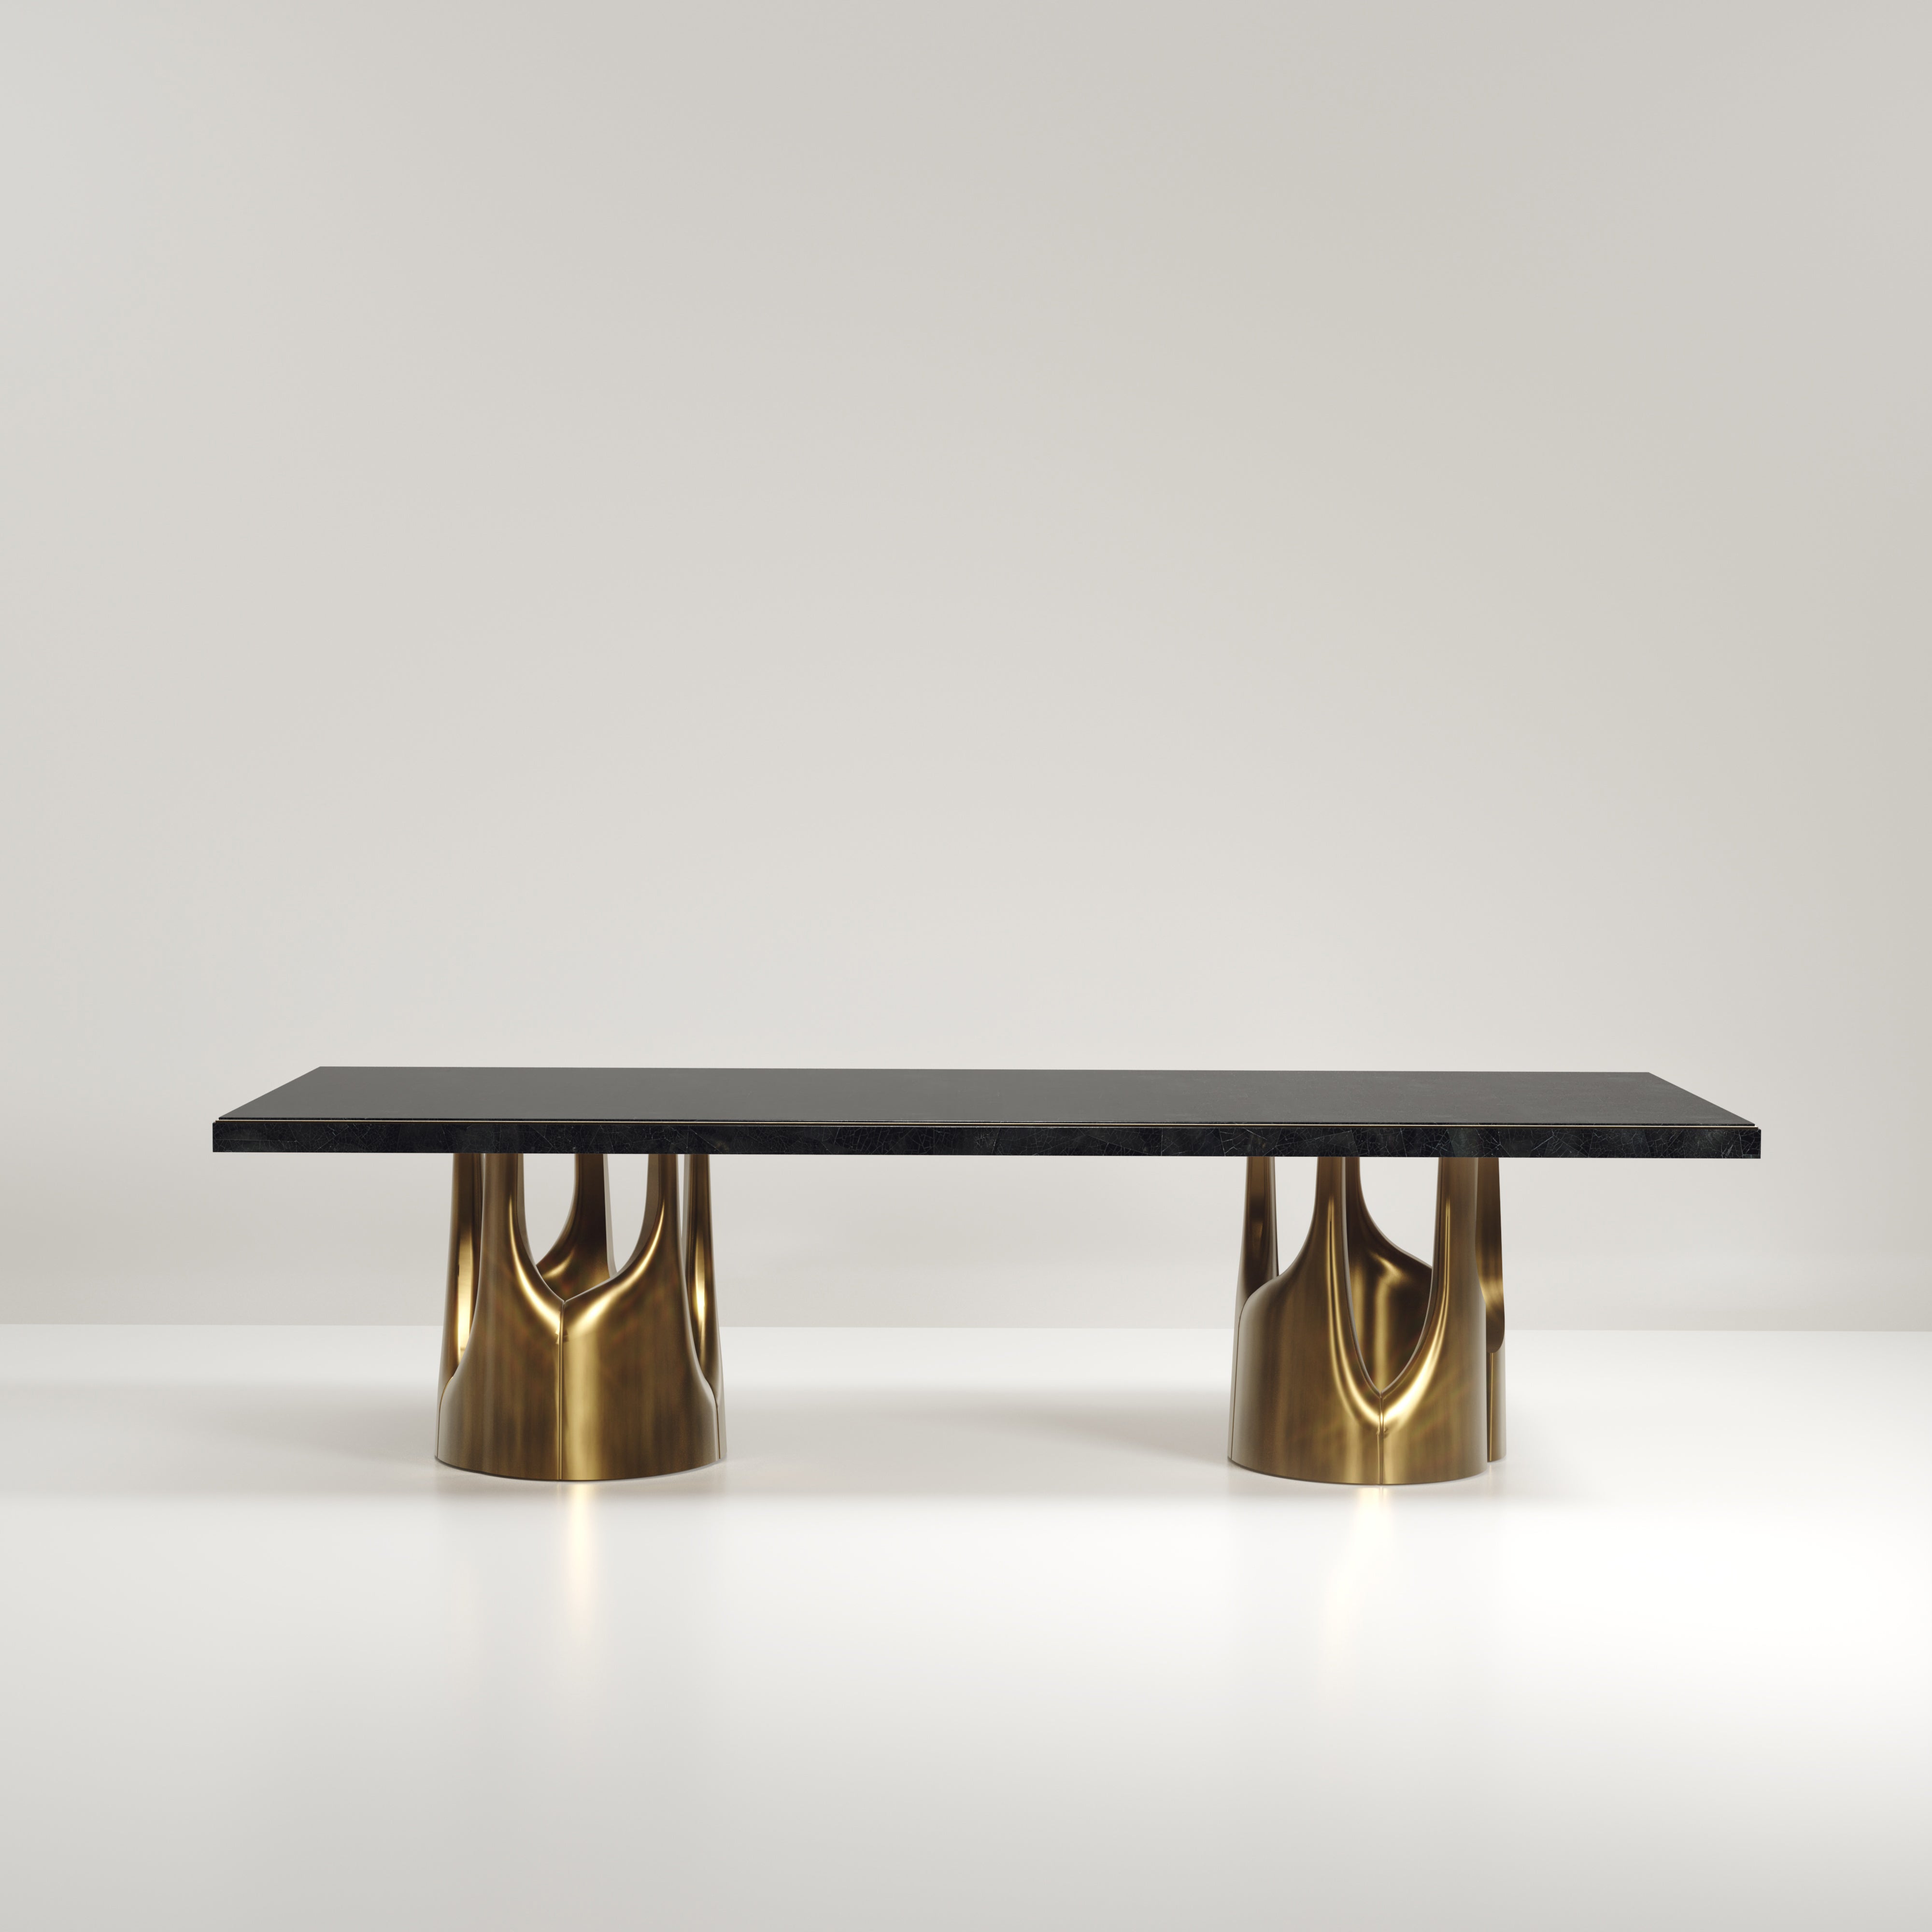 La table de salle à manger Triptych I de R&Y Augousti est une étonnante pièce sculpturale à multiples facettes. Les magnifiques détails gravés à la main sur la base en bronze-patine témoignent de l'incroyable travail artisanal d'Augousti. Le dessus